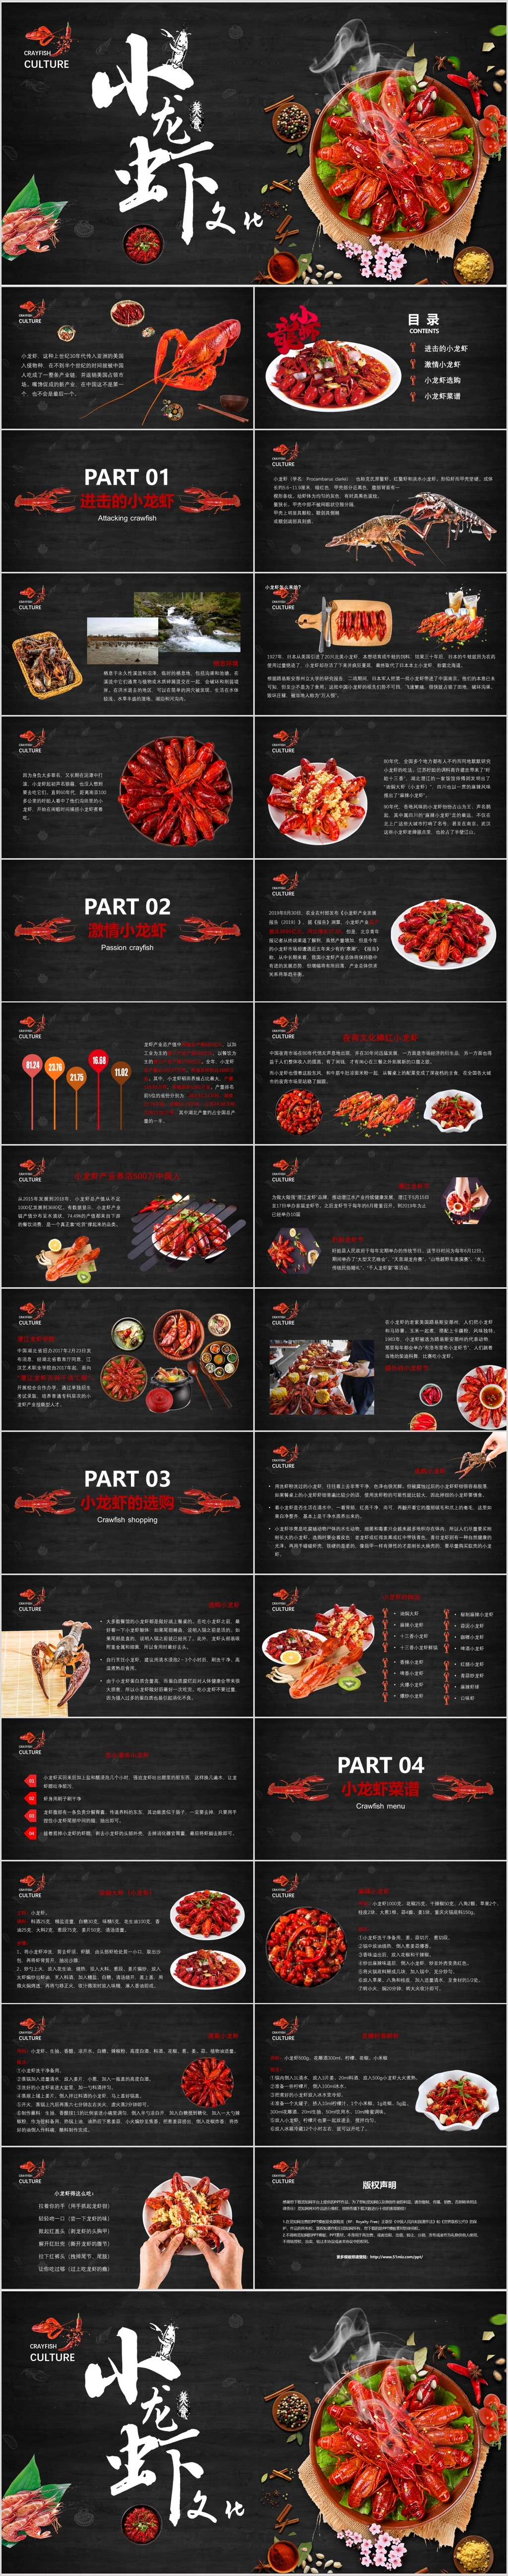 黑色插画风格小龙虾美食文化介绍推广展示PPT模板